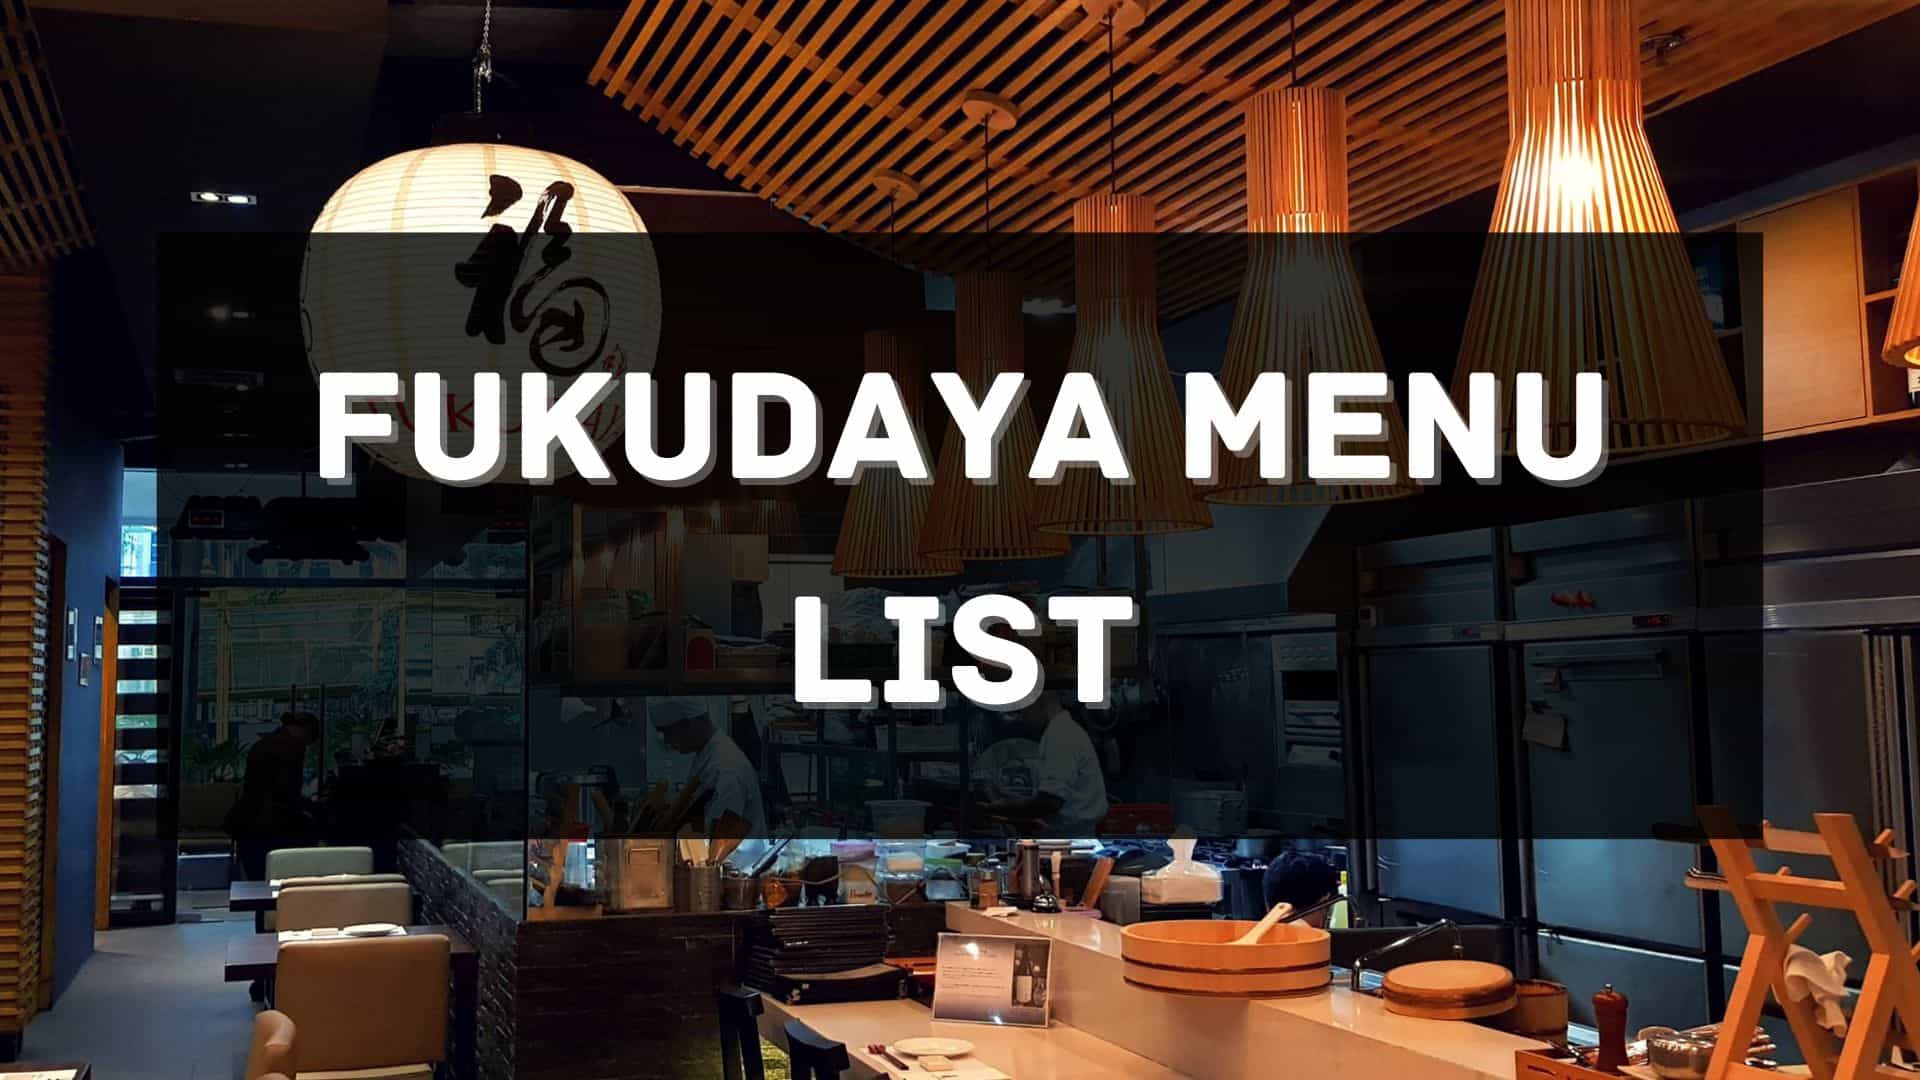 fukudaya menu prices philippines